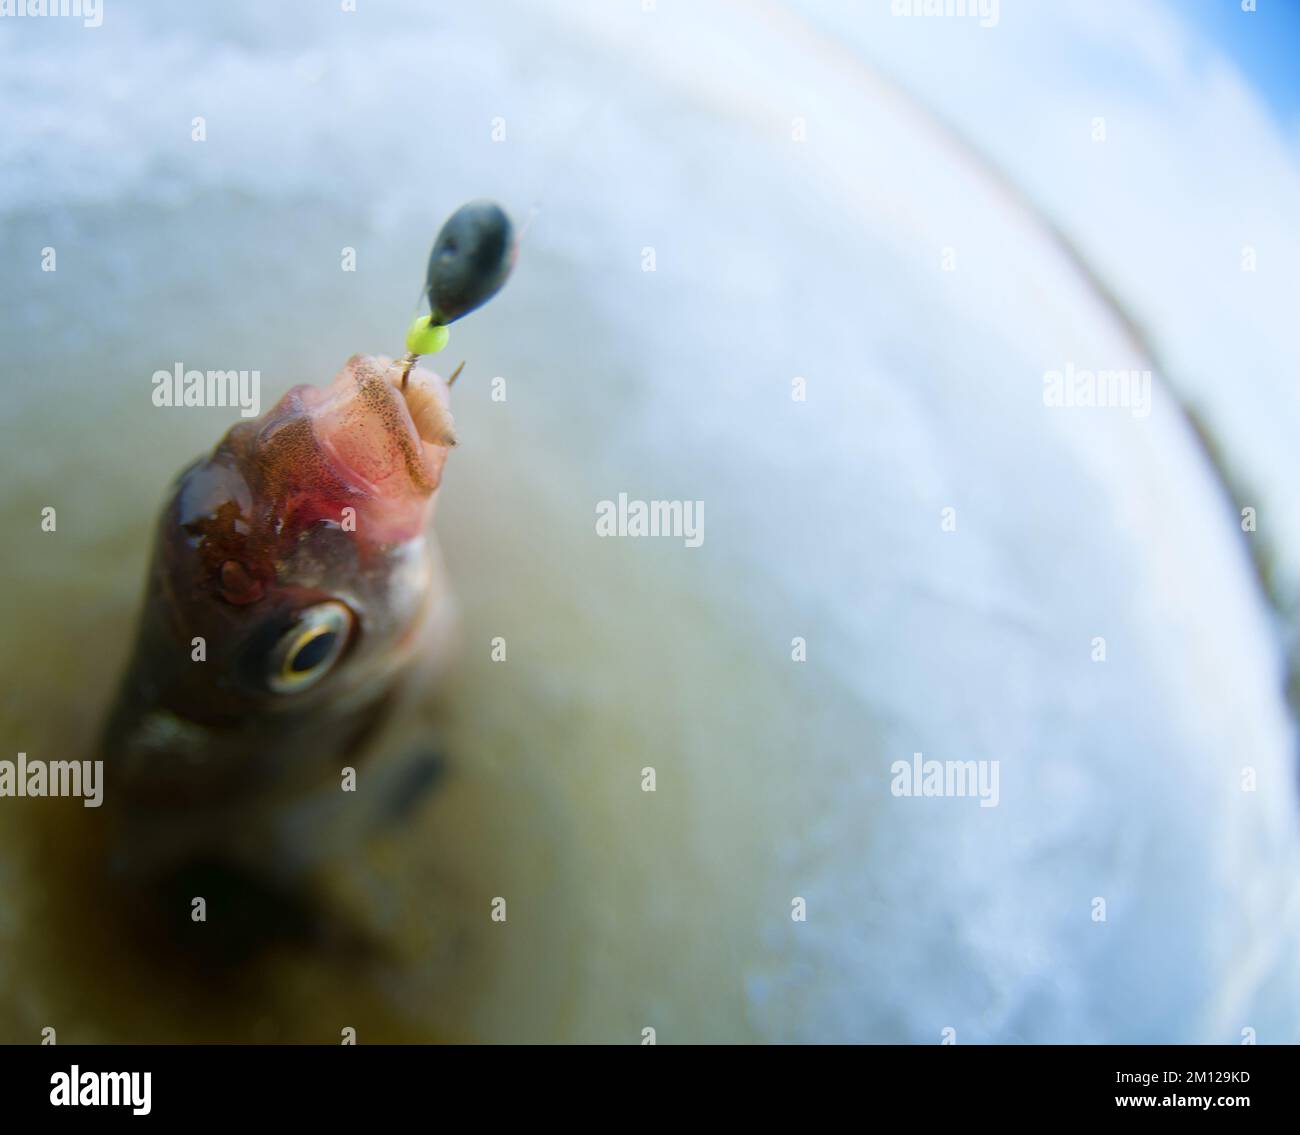 Pêche récréative sur glace. Une photo de la pêche à la ruche avec un trou et une arnaque. Un objectif Fish-eye est utilisé Banque D'Images